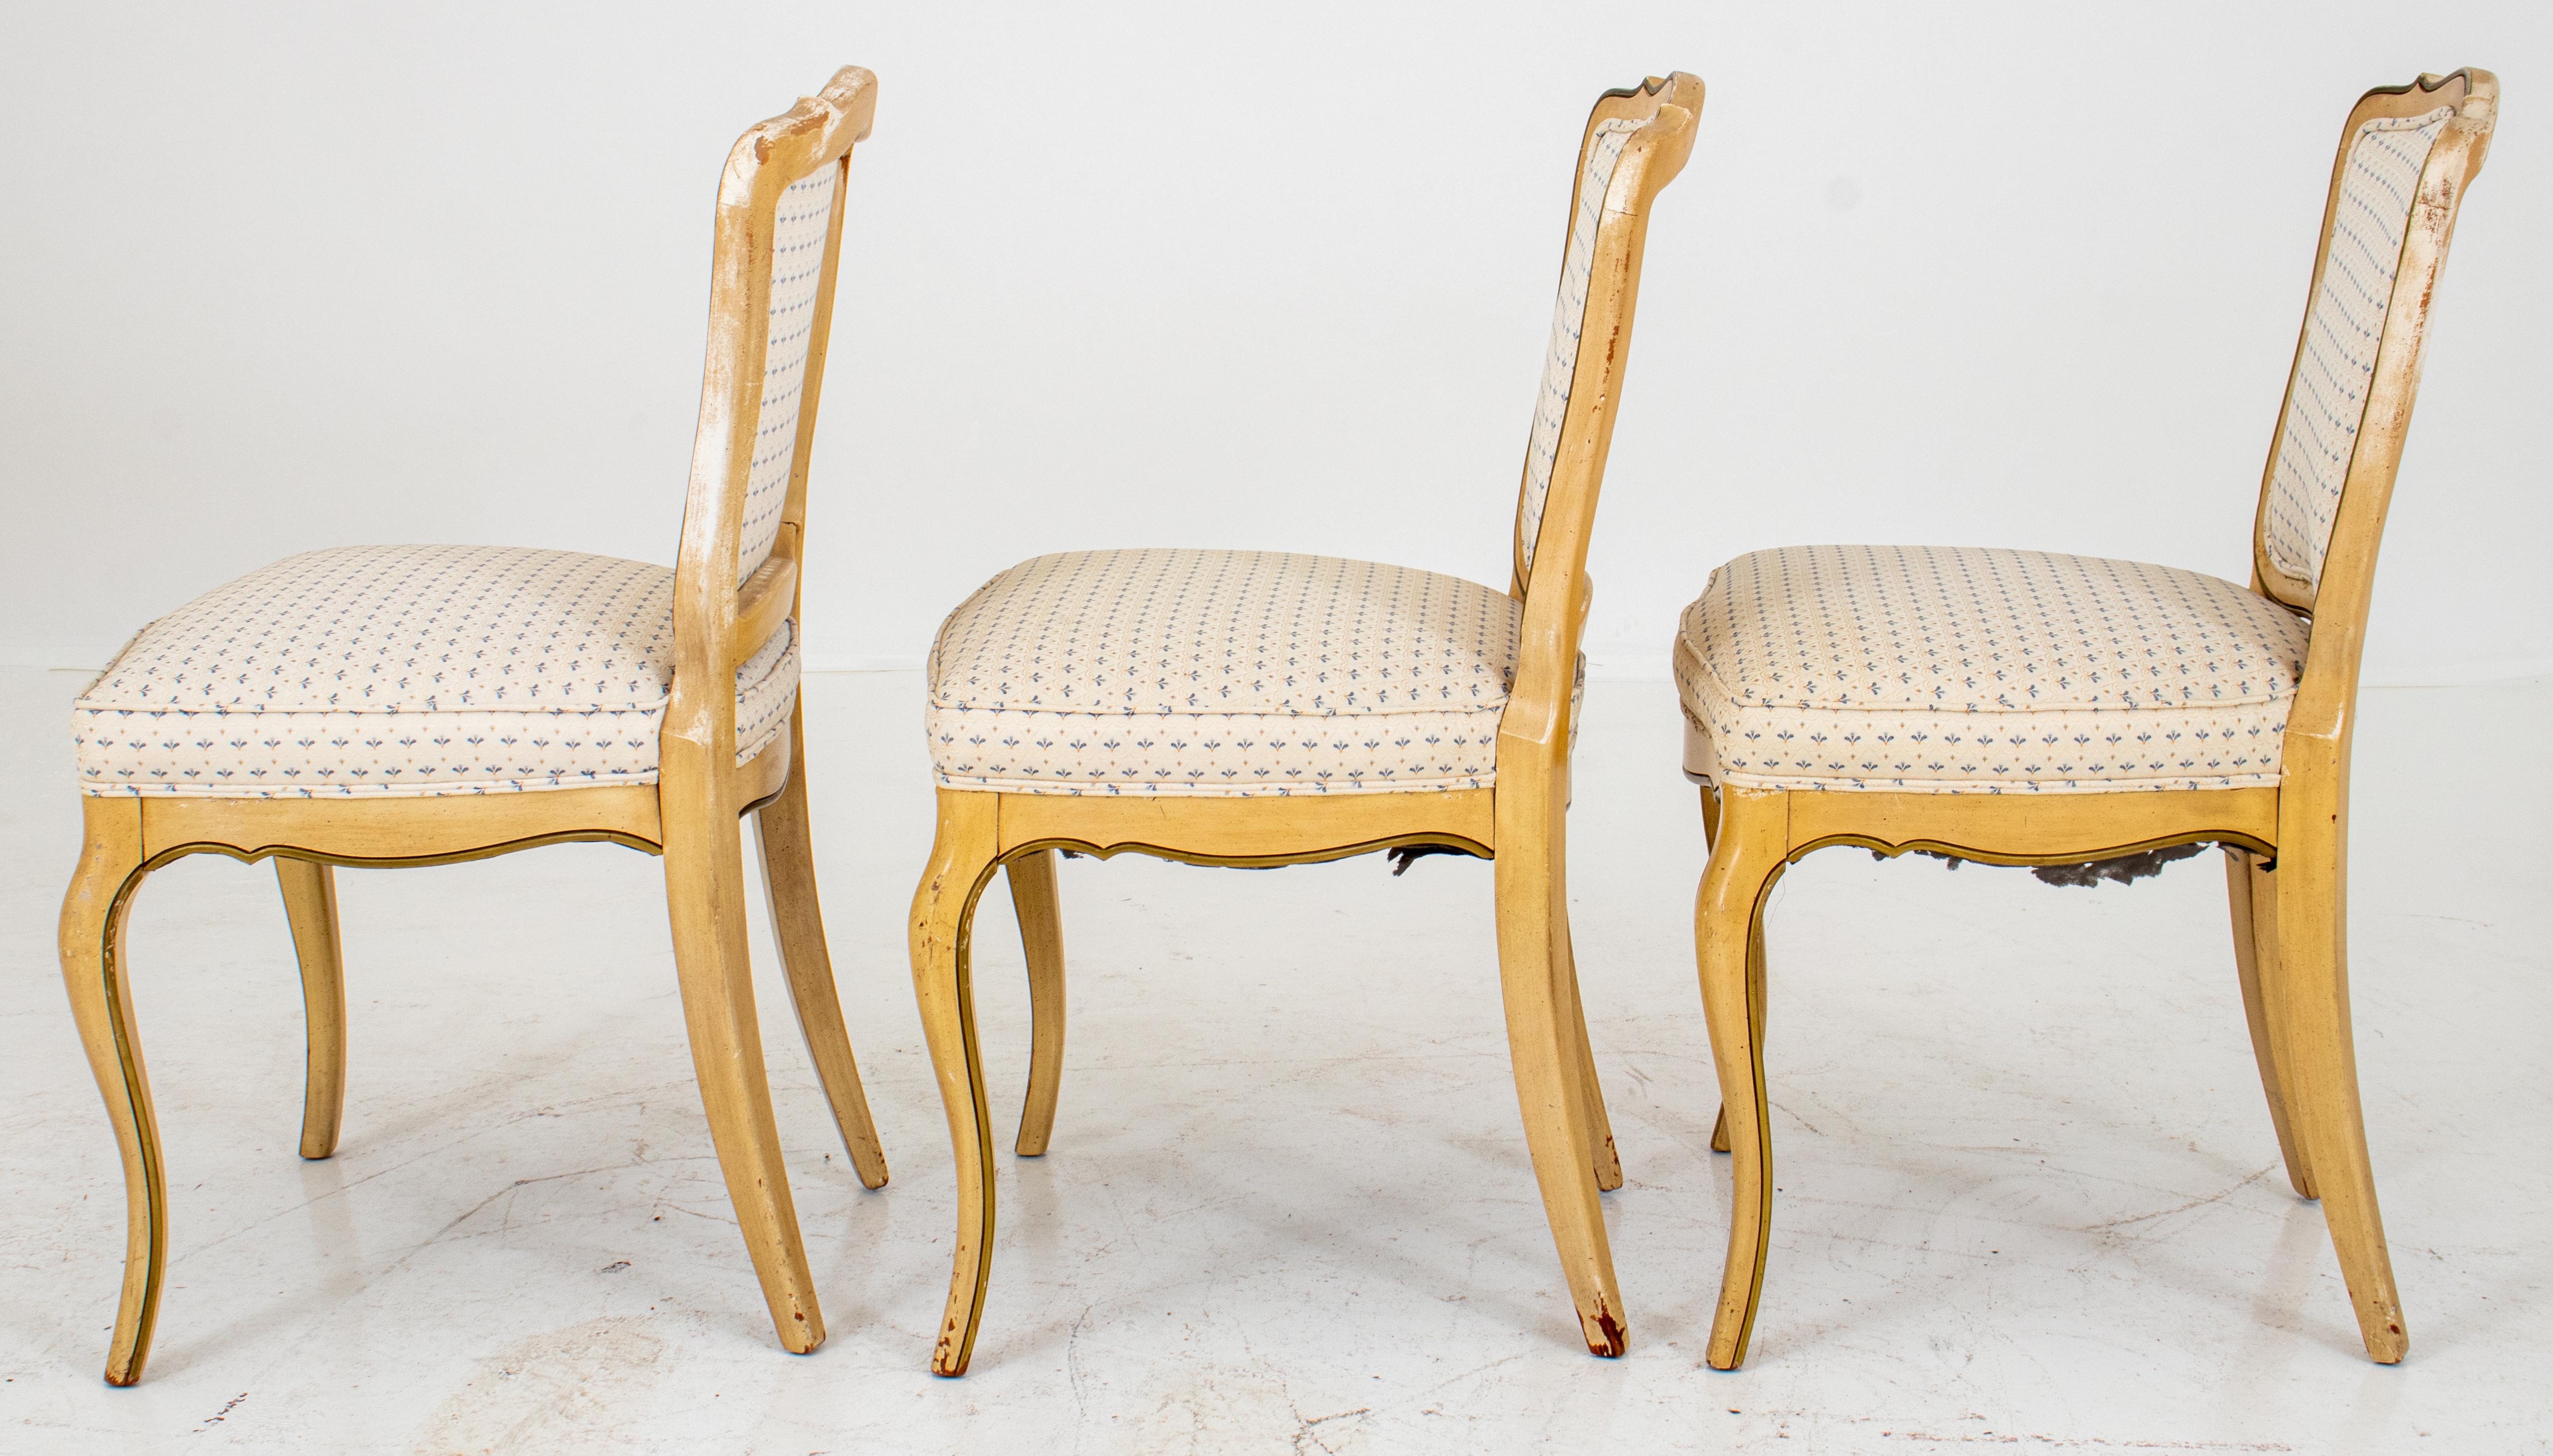 Bemalte Beistellstühle im Louis-XV-Provinzial-Stil, mit geformtem Kamm über einer gepolsterten Rückenlehne und Sitzfläche. Die Stühle sind mit gelber und blauer Farbe bemalt und mit blauem und weißem Jacquard bezogen. Maße: 35